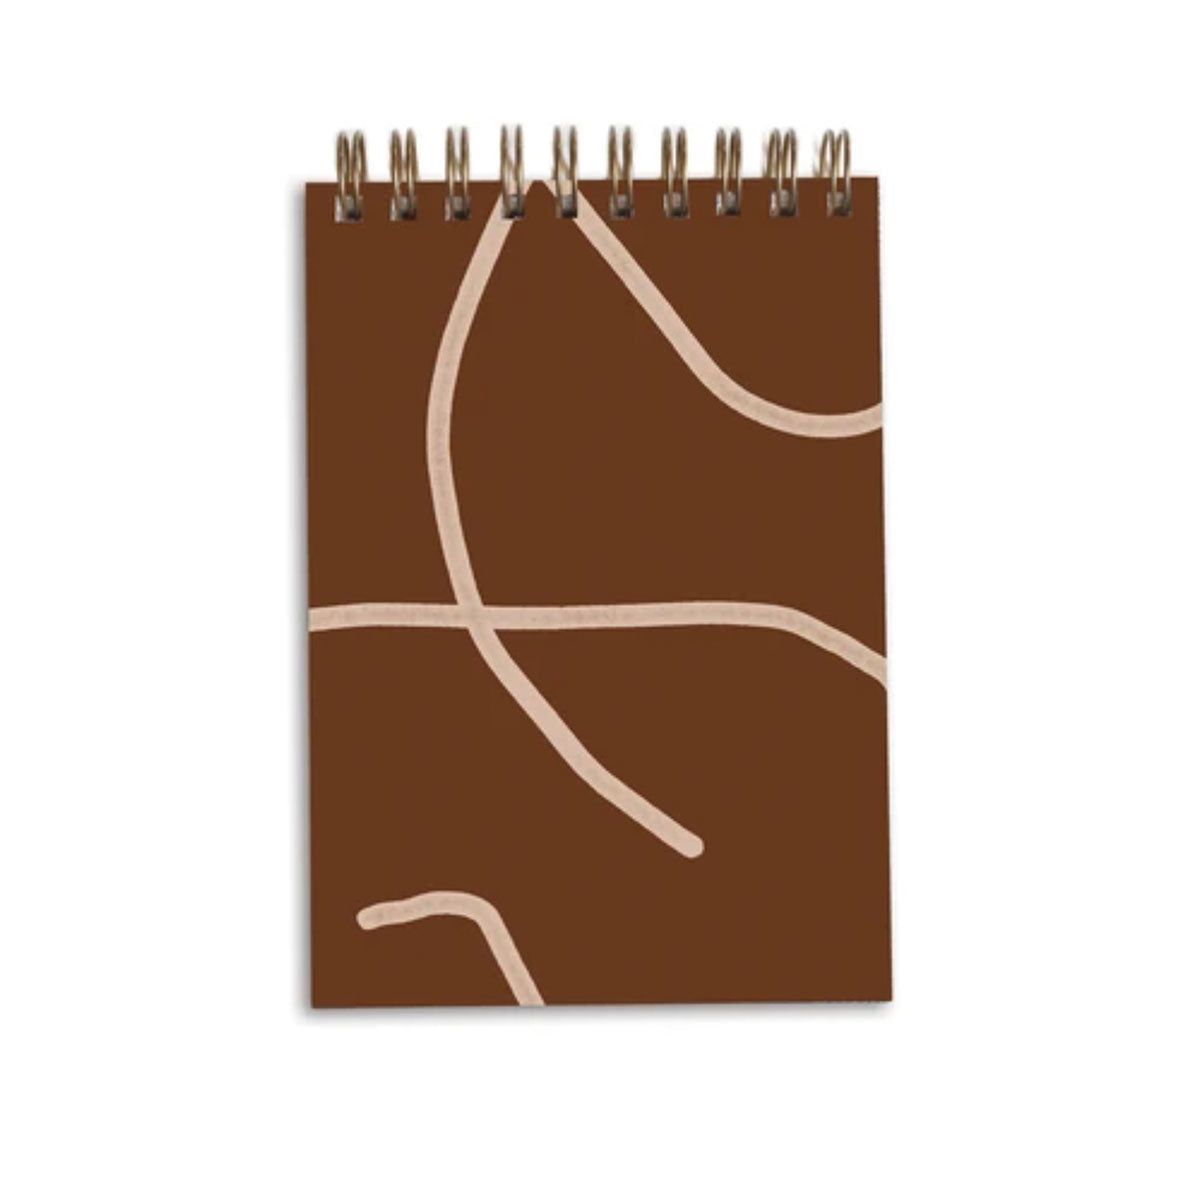 Mini Handpainted Notebook